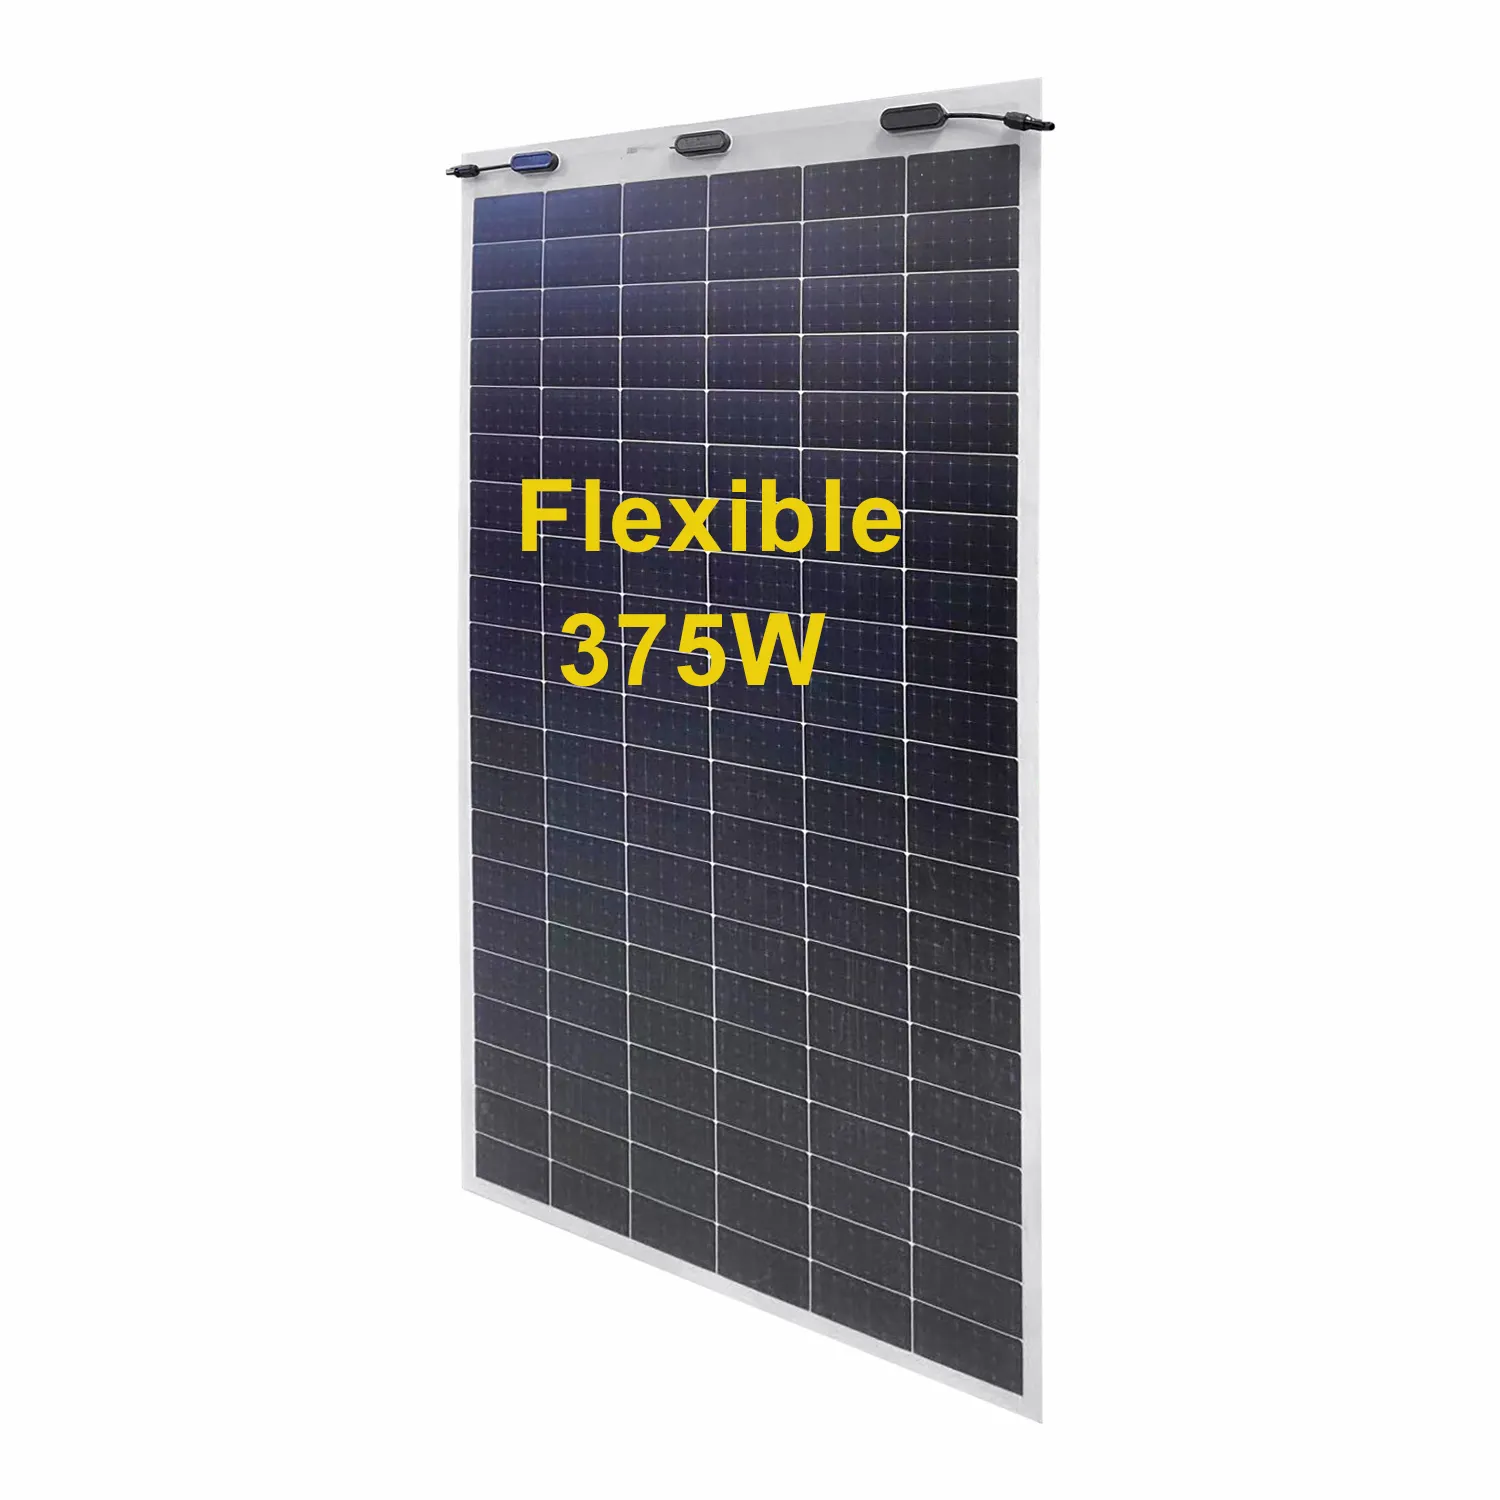 Reliab için endüstriyel 310 w esnek GÜNEŞ PANELI yüksek kaliteli flexible esnek güneş panelleri